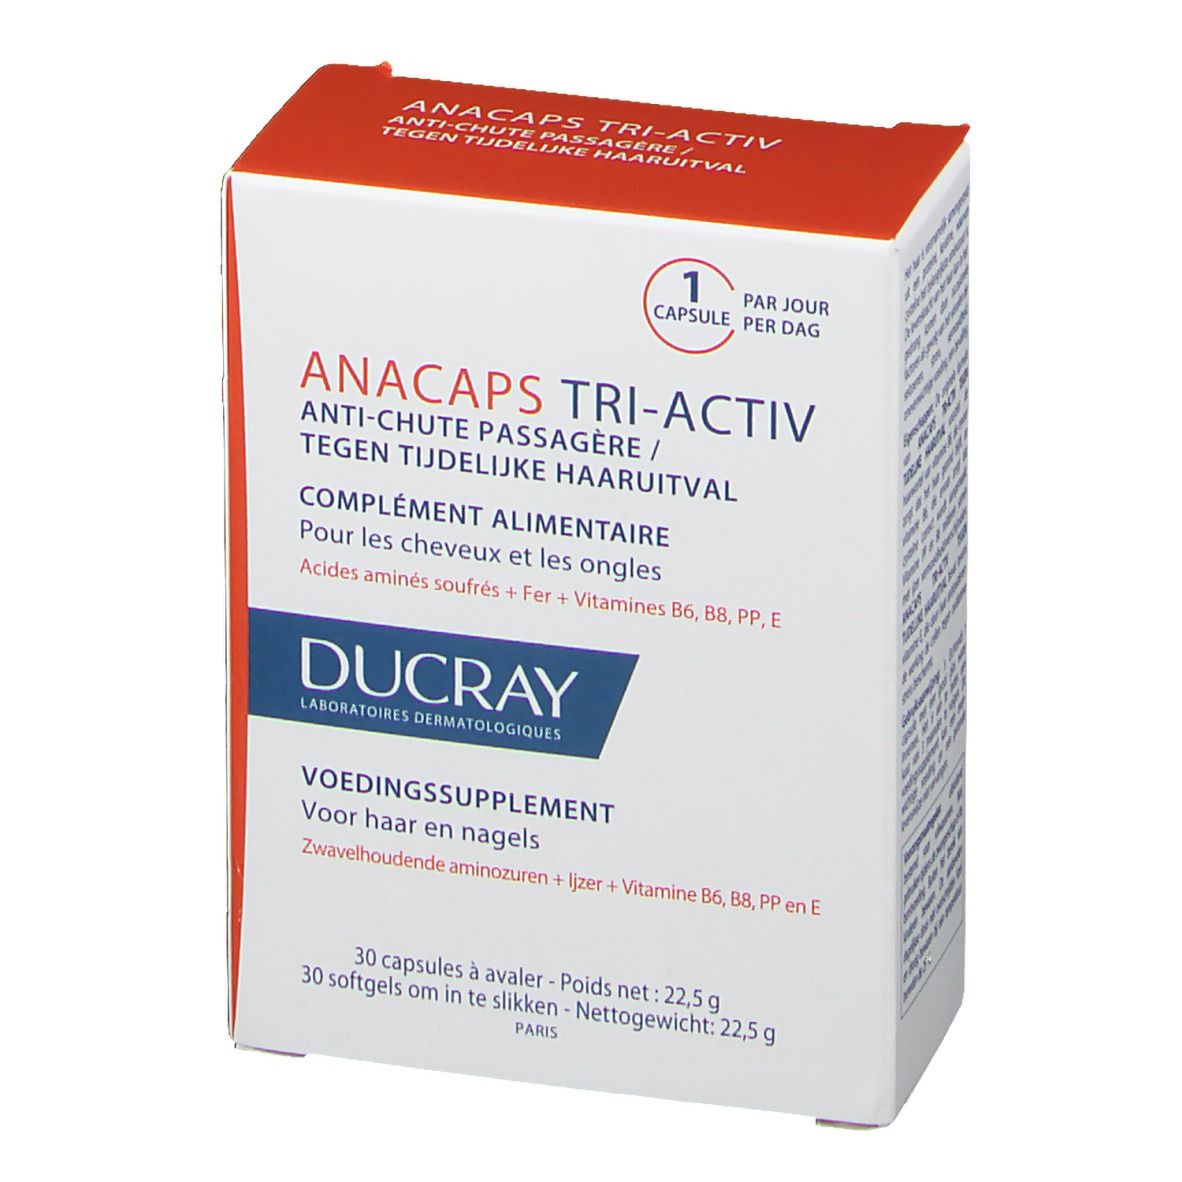 Ducray Anacaps Tri-Activ tegen Tijdelijke Haaruitval